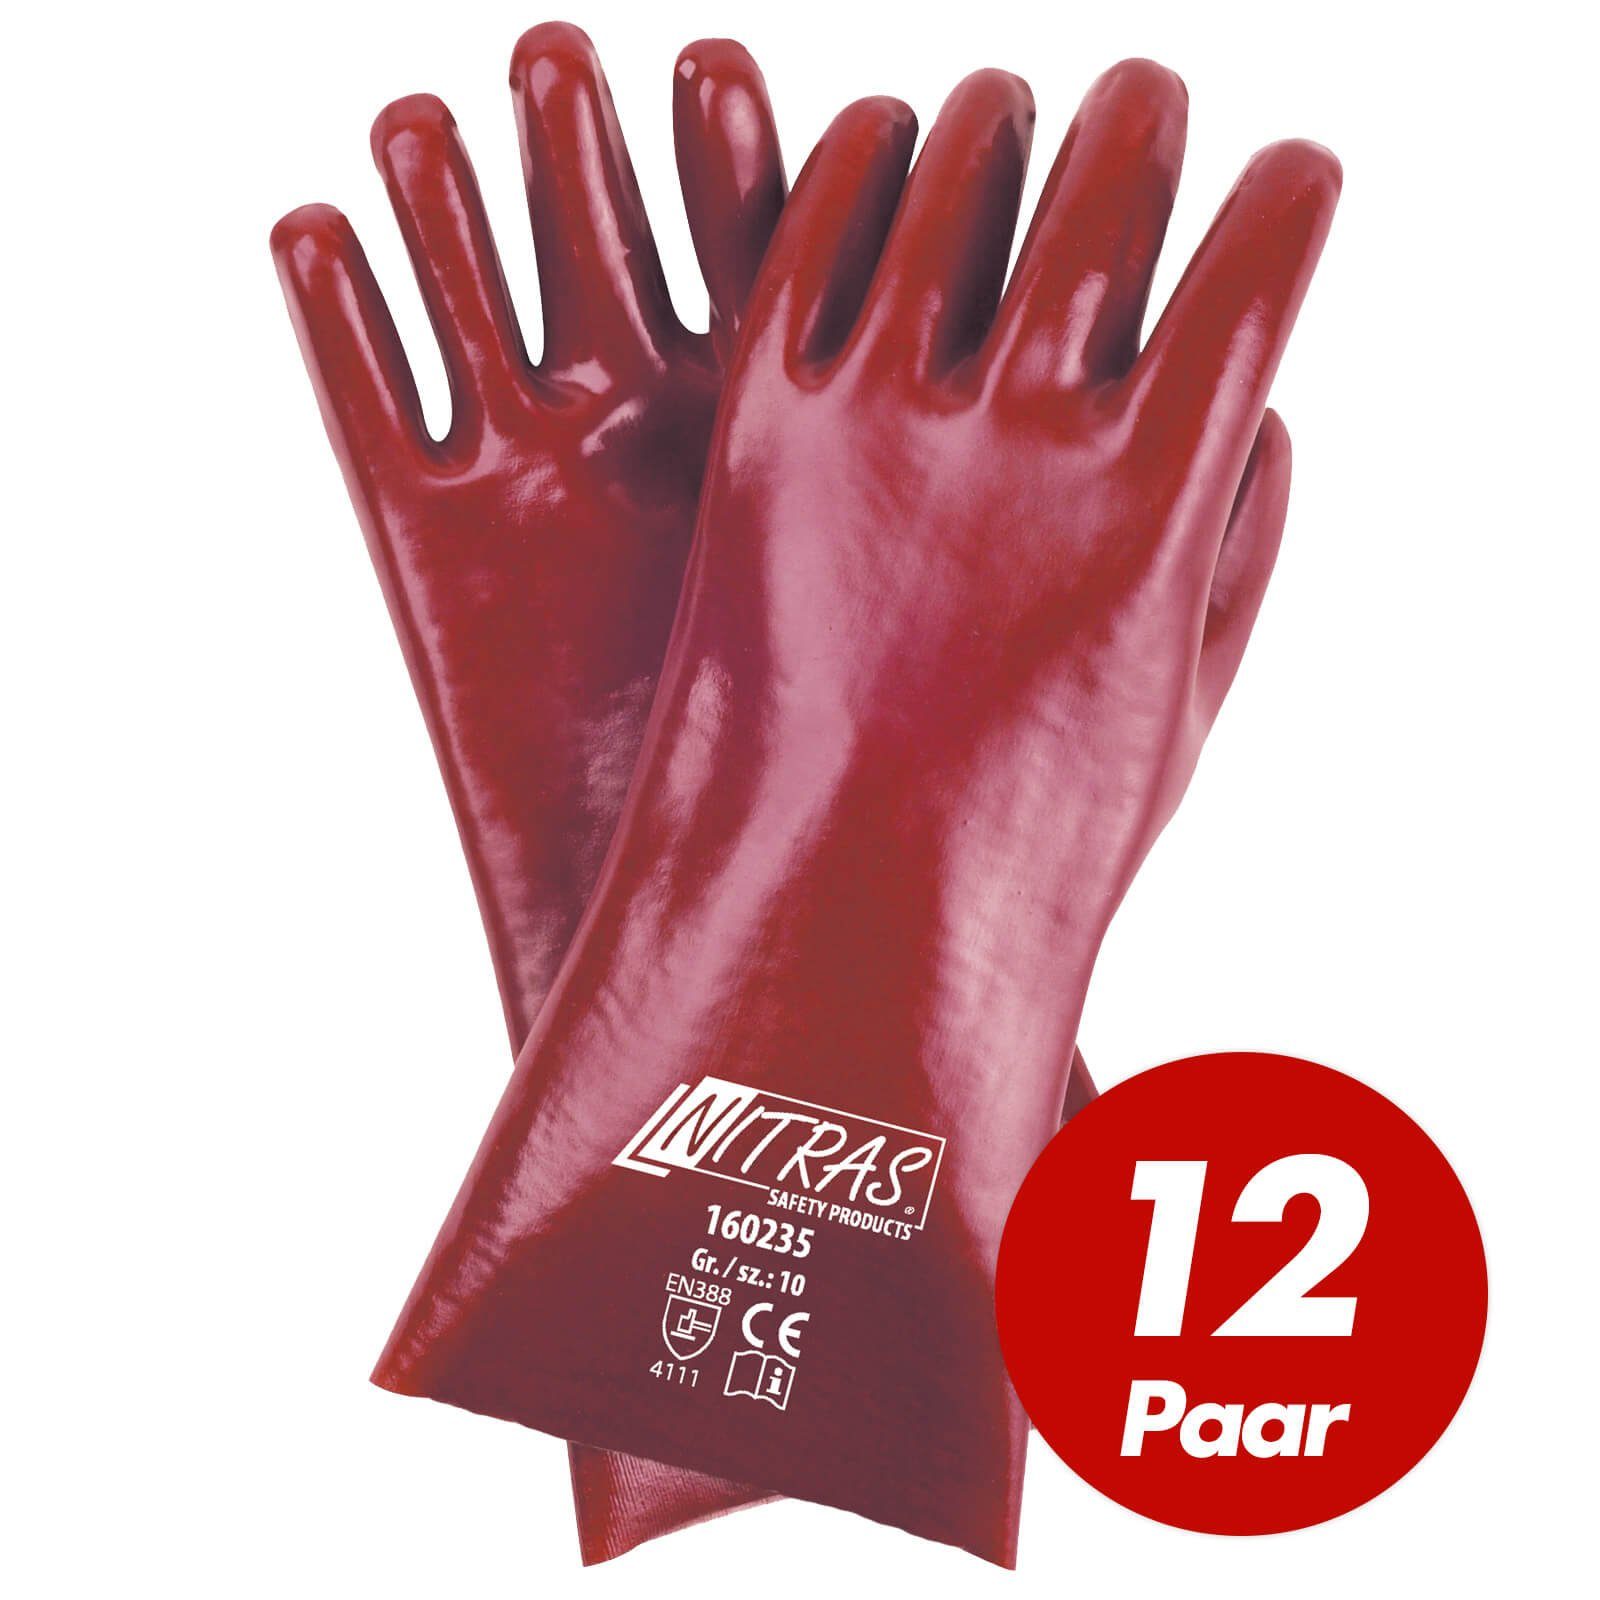 Nitras Nitril-Handschuhe NITRAS PVC-Handschuhe 160235 Chemikalienhandschuhe 35cm - VPE 12 Paar (Spar-Set)